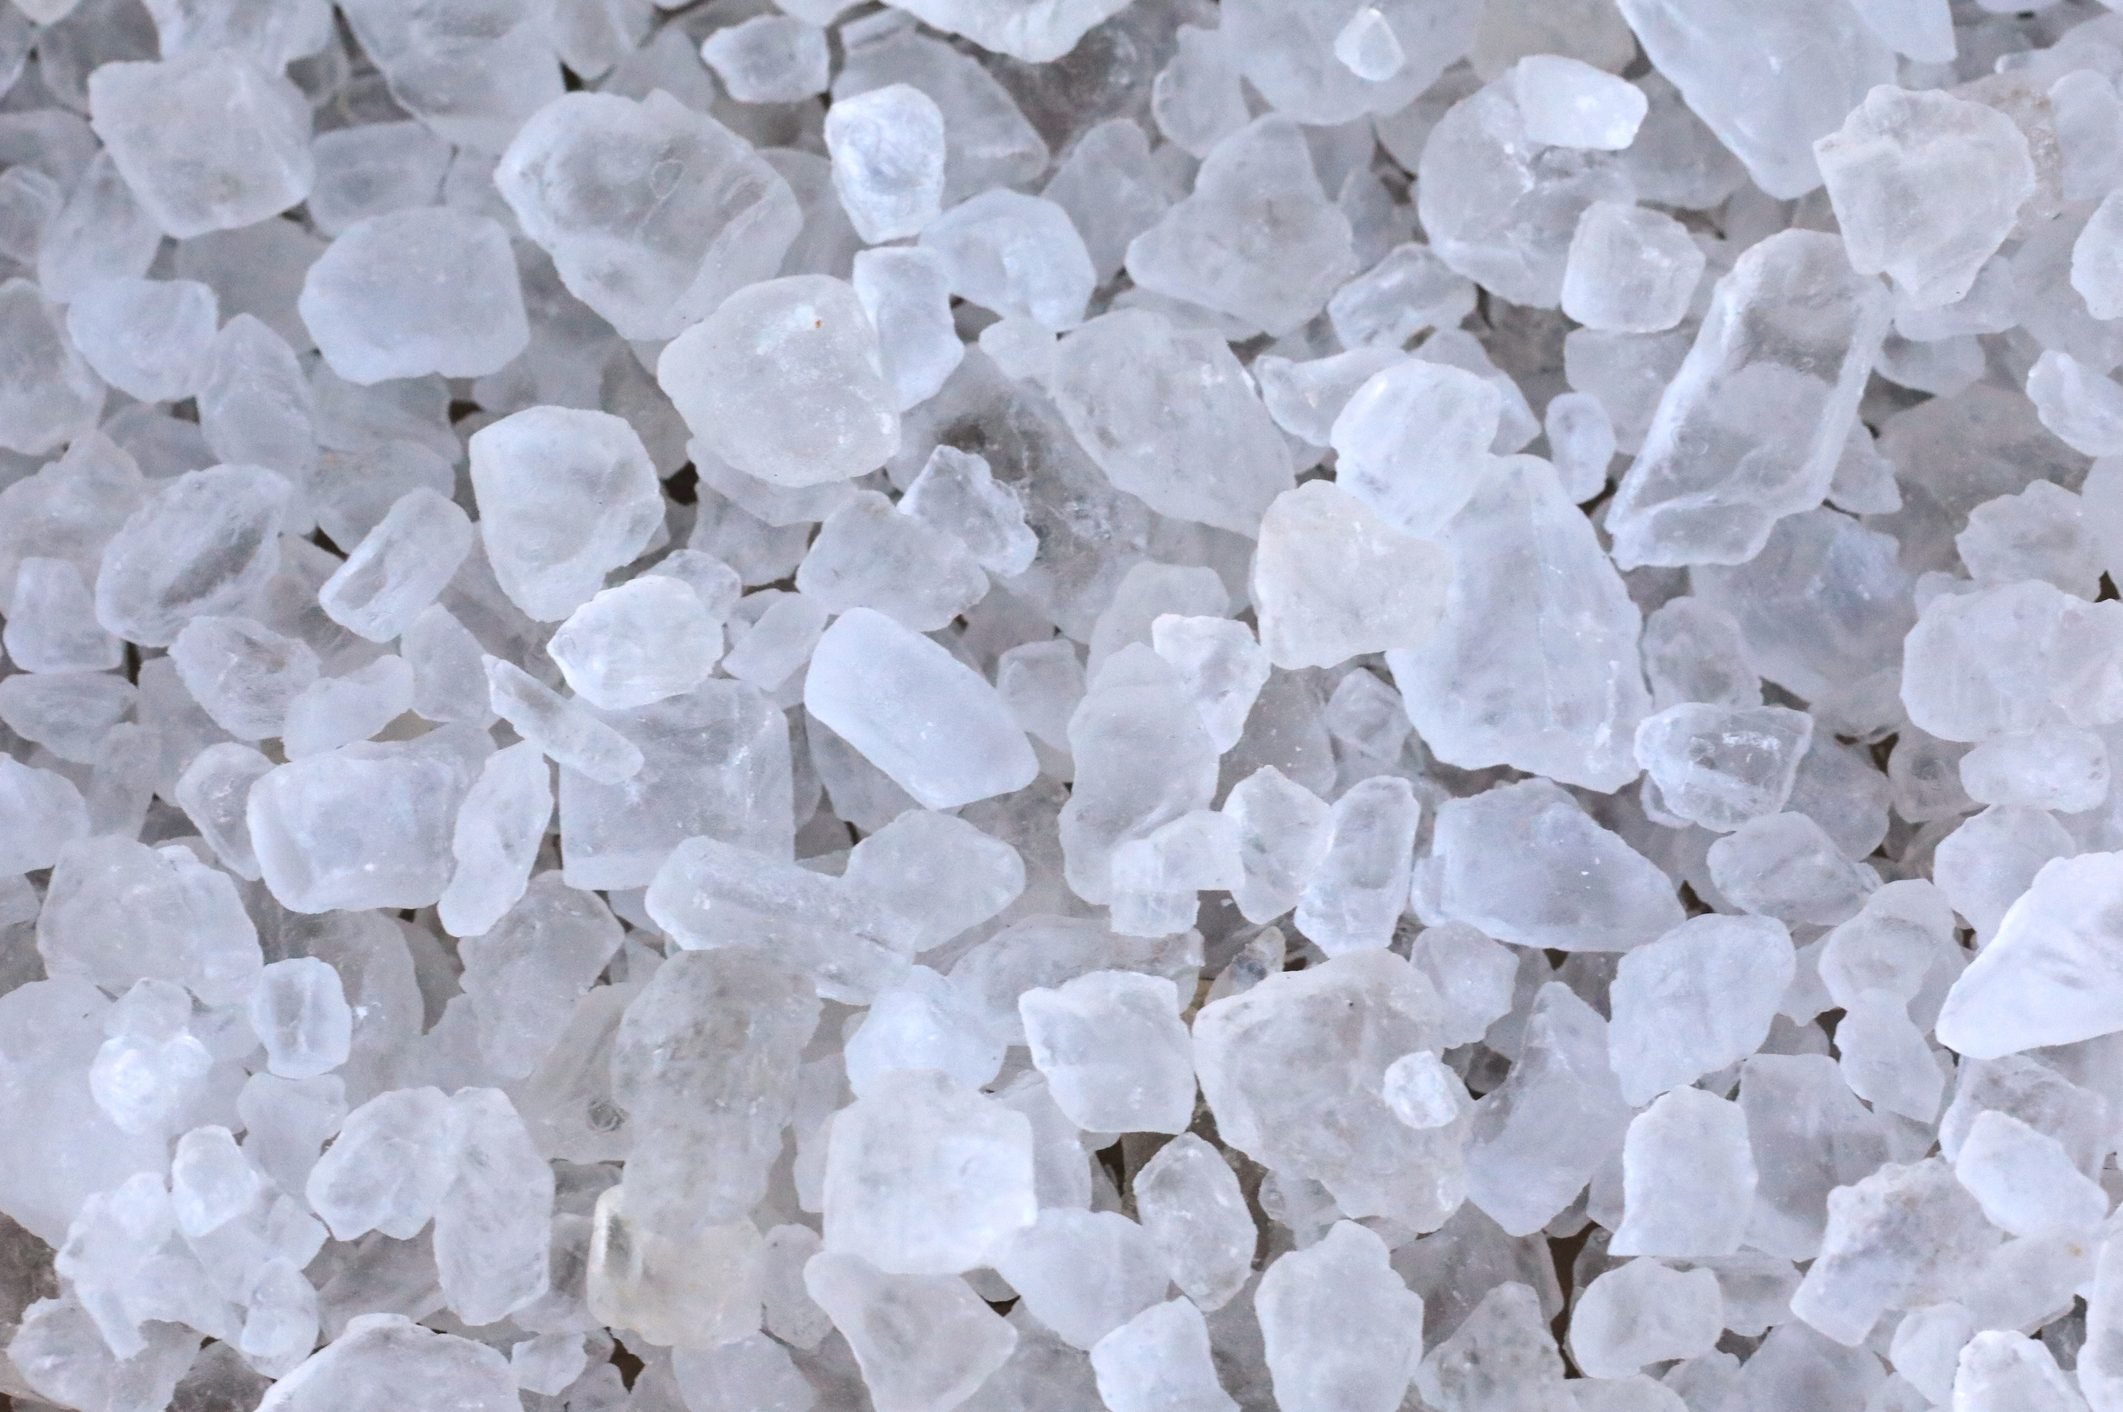 Crystal rock salt for road de-icing